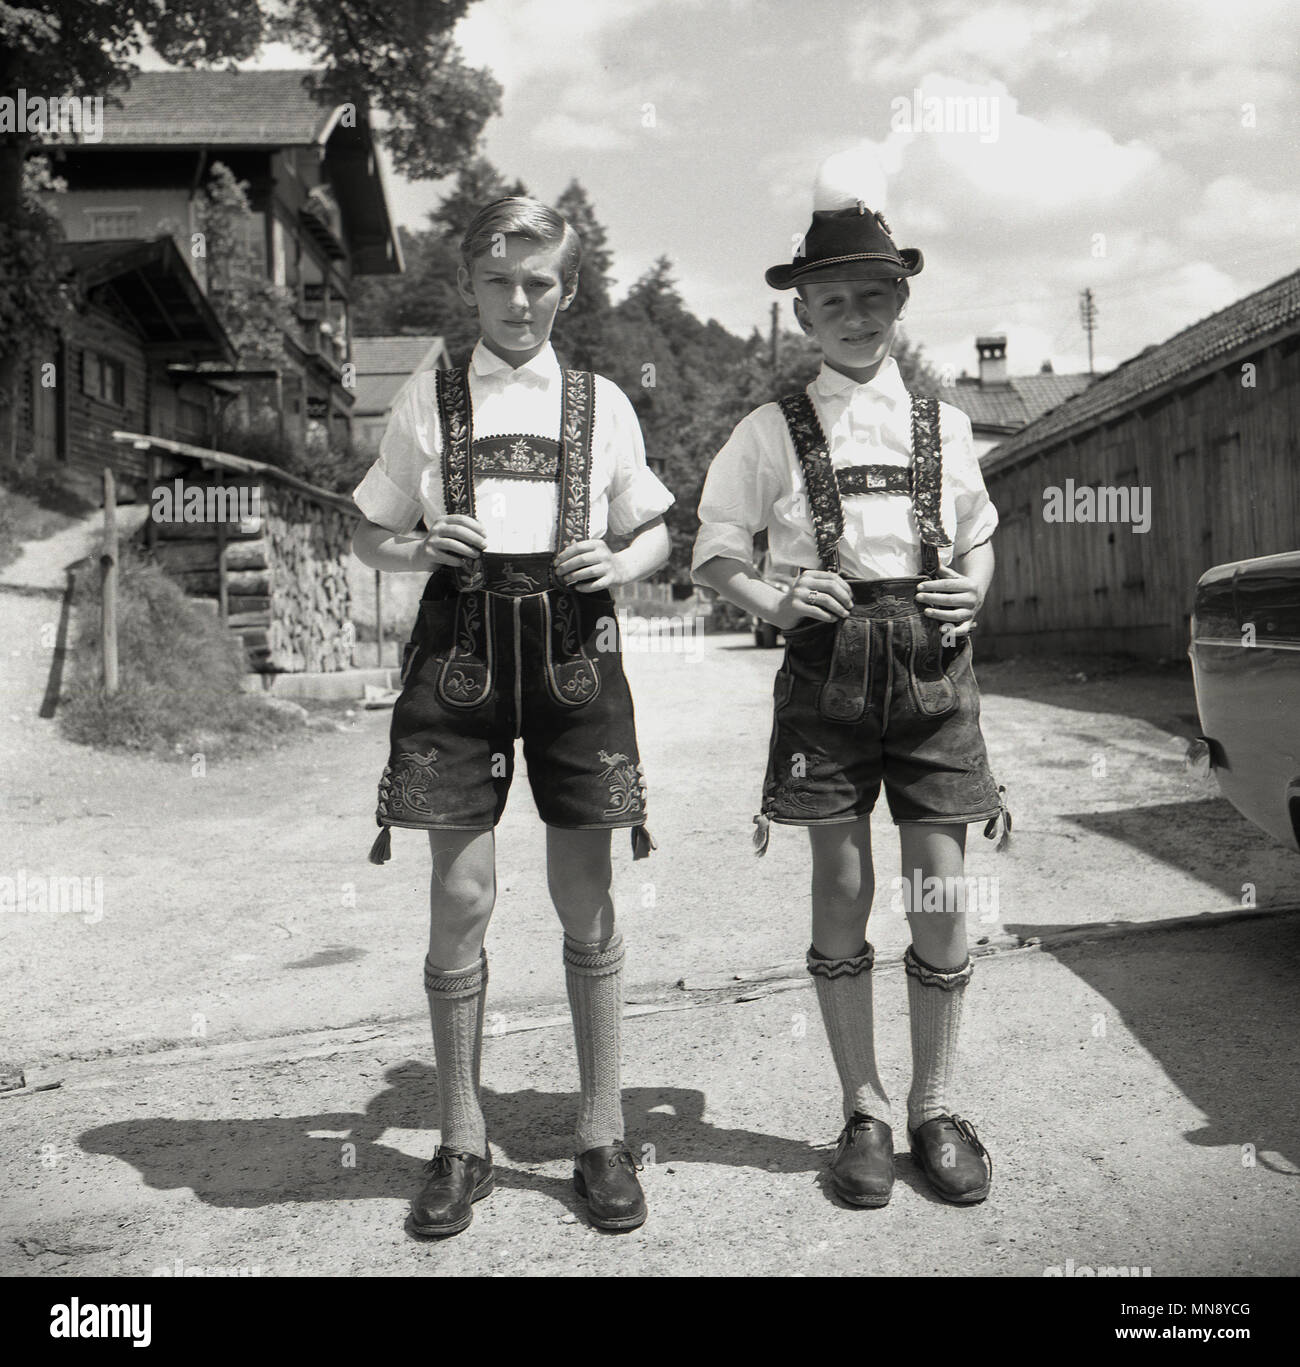 Degli anni Cinquanta, i due giovani ragazzi bavarese di stare in piedi insieme su una pista polverosa al di fuori di un villaggio delle Alpi, Germania, indossando abiti tradizionali del SER, breve pantaloni di pelle o lederhosen, Foto Stock